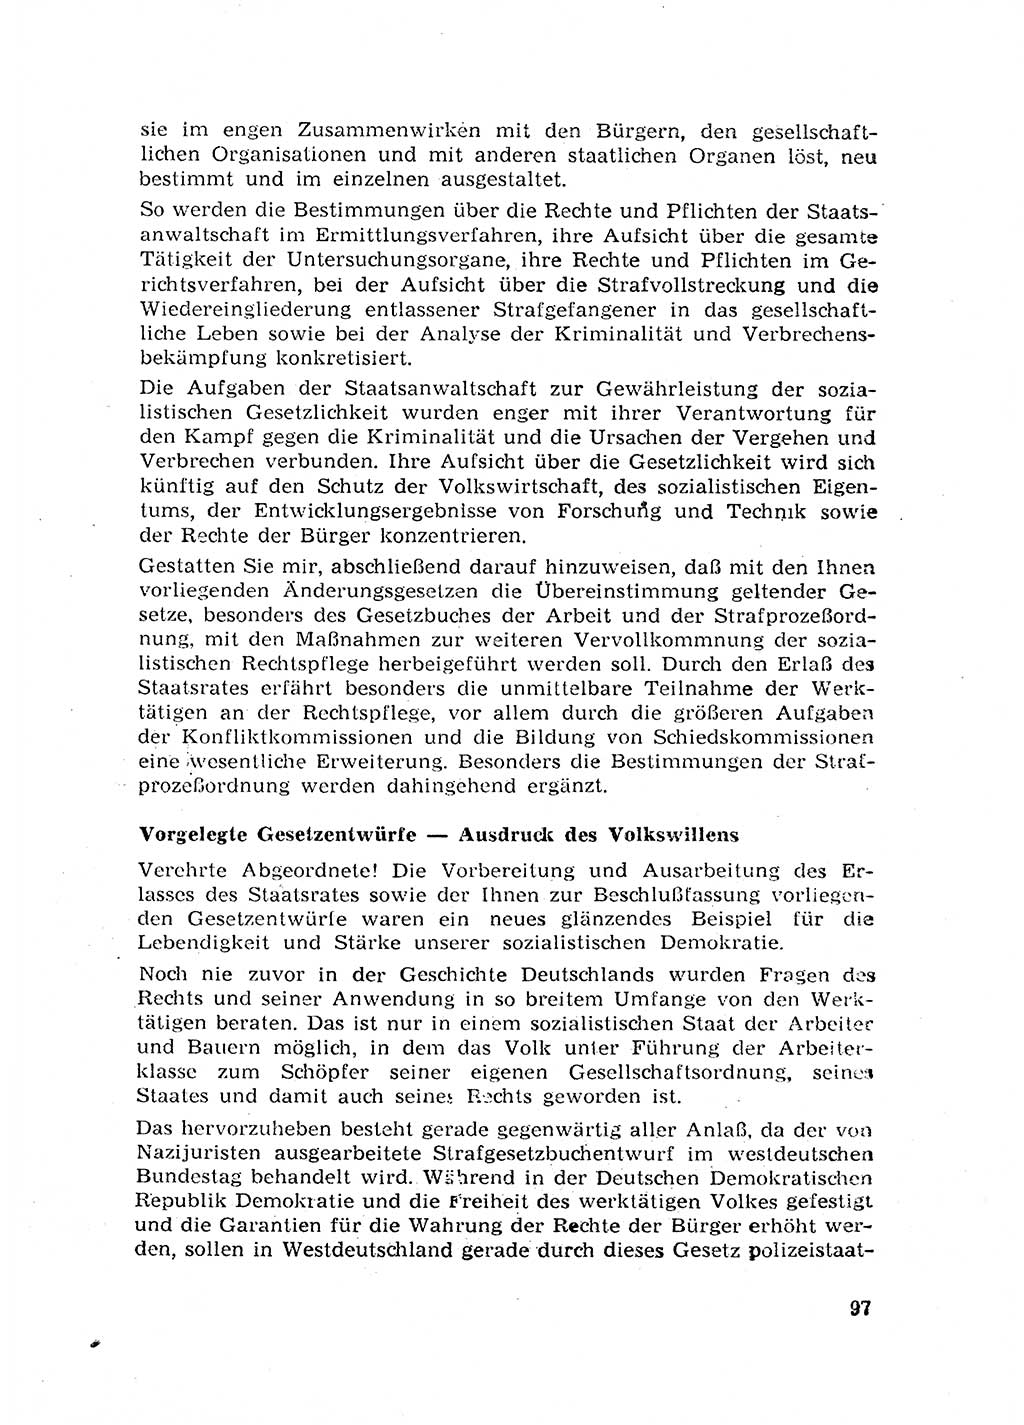 Rechtspflegeerlaß [Deutsche Demokratische Republik (DDR)] 1963, Seite 97 (R.-Pfl.-Erl. DDR 1963, S. 97)